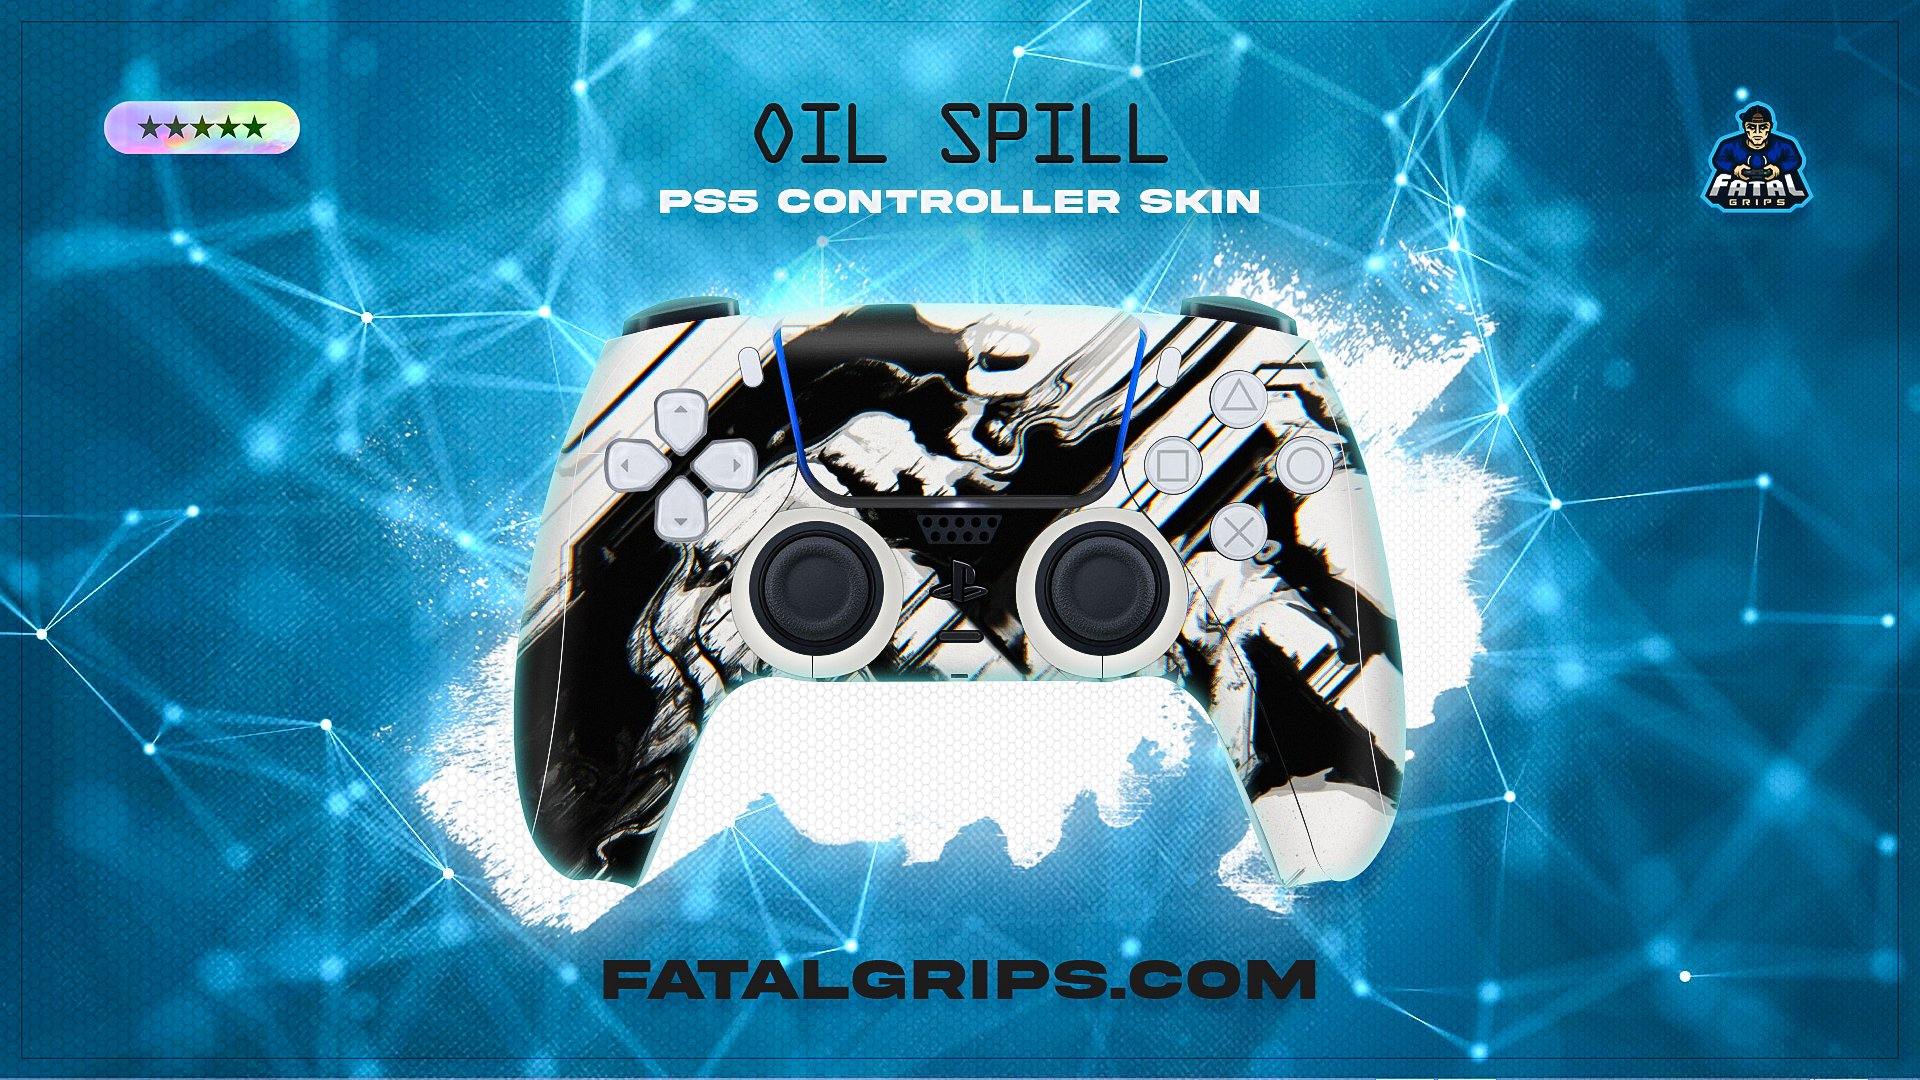 Oil Spill PS5 Controller Skin - Fatal Grips